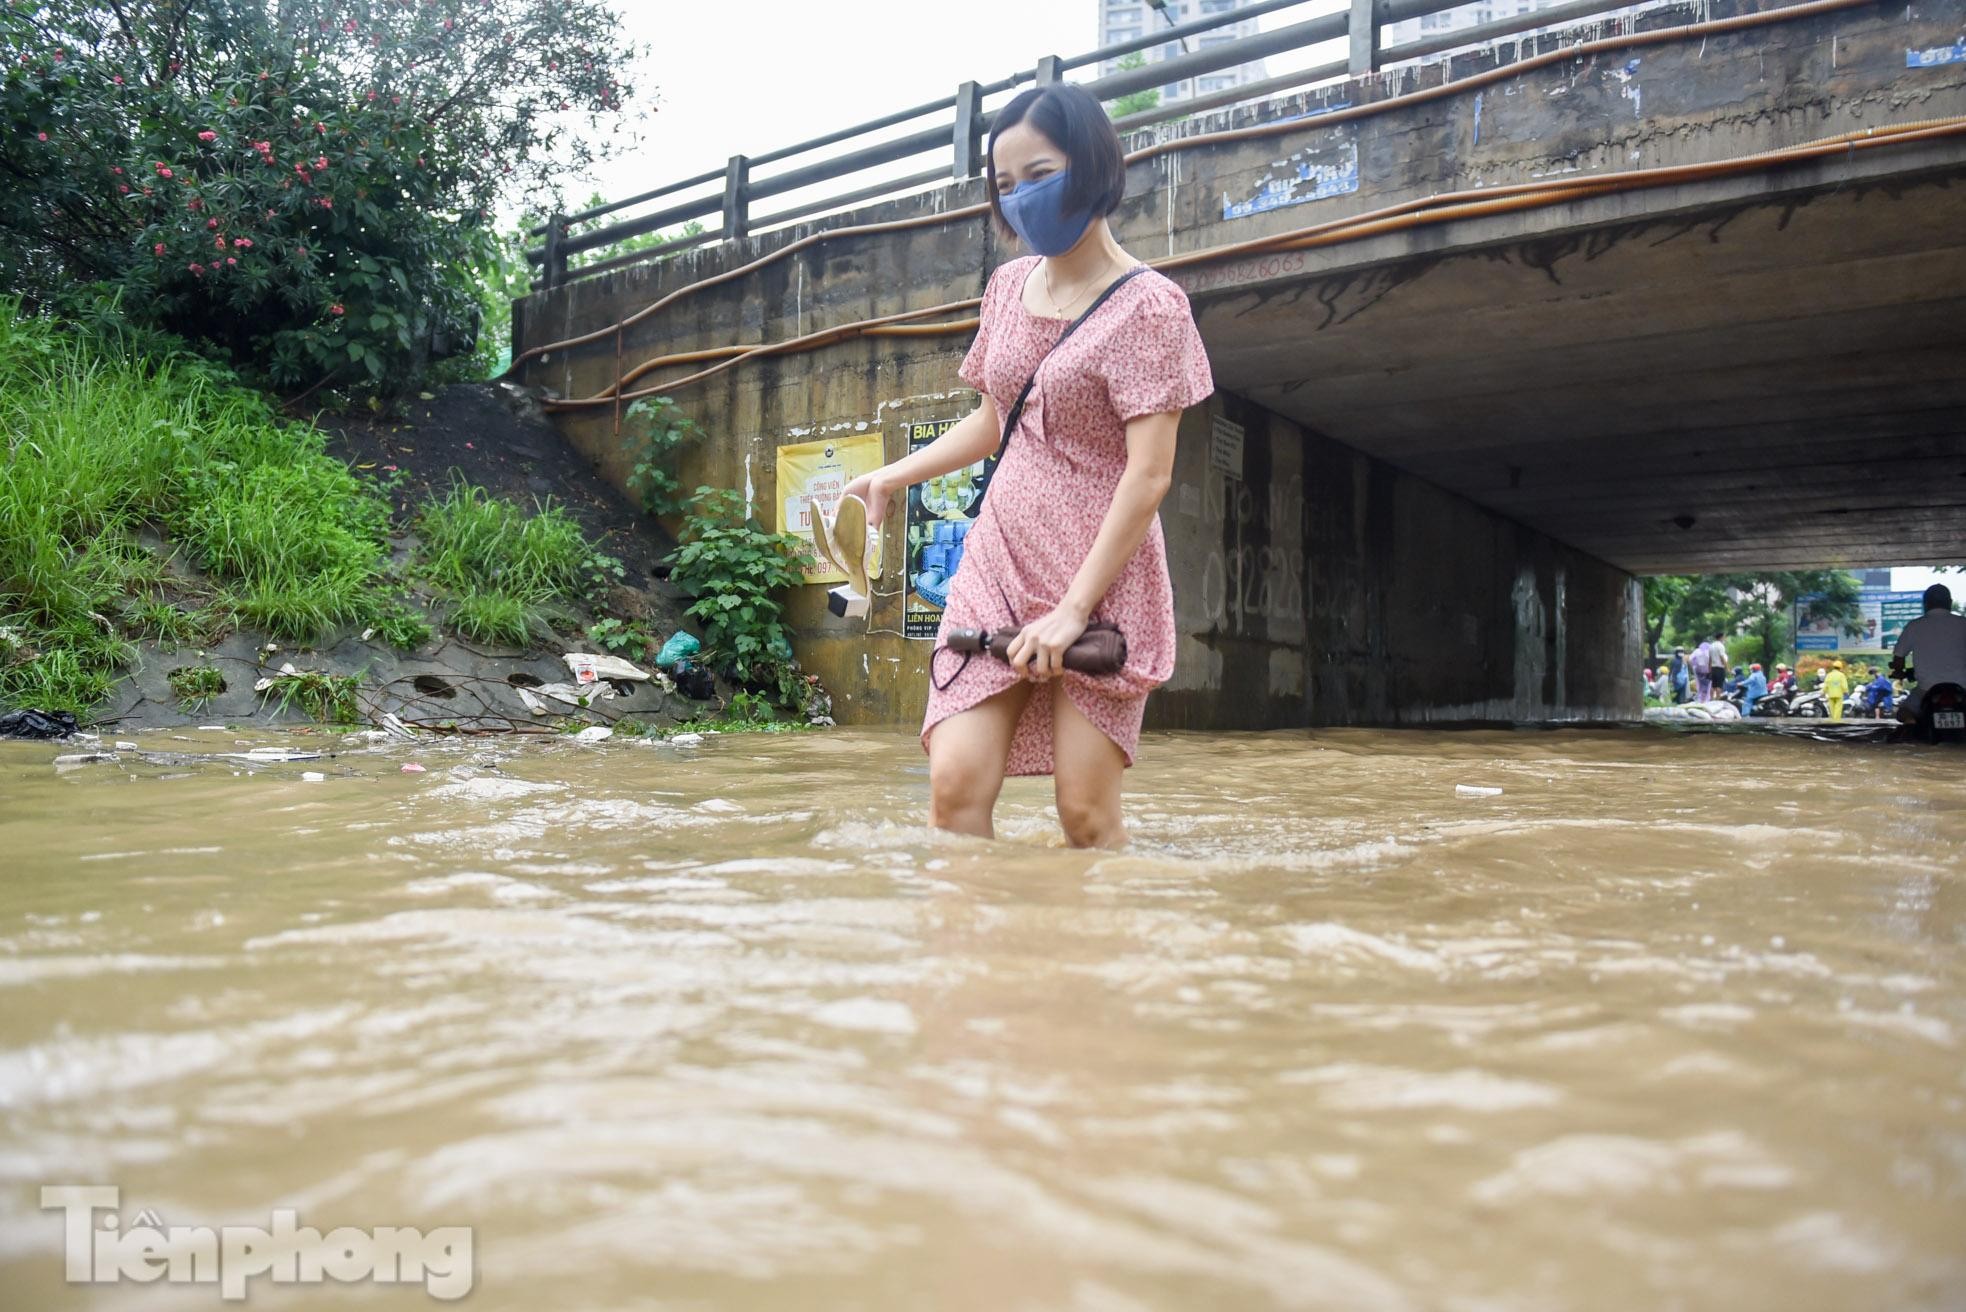 Đại lộ Thăng Long chìm trong biển nước, phương tiện chết máy hàng loạt ảnh 6